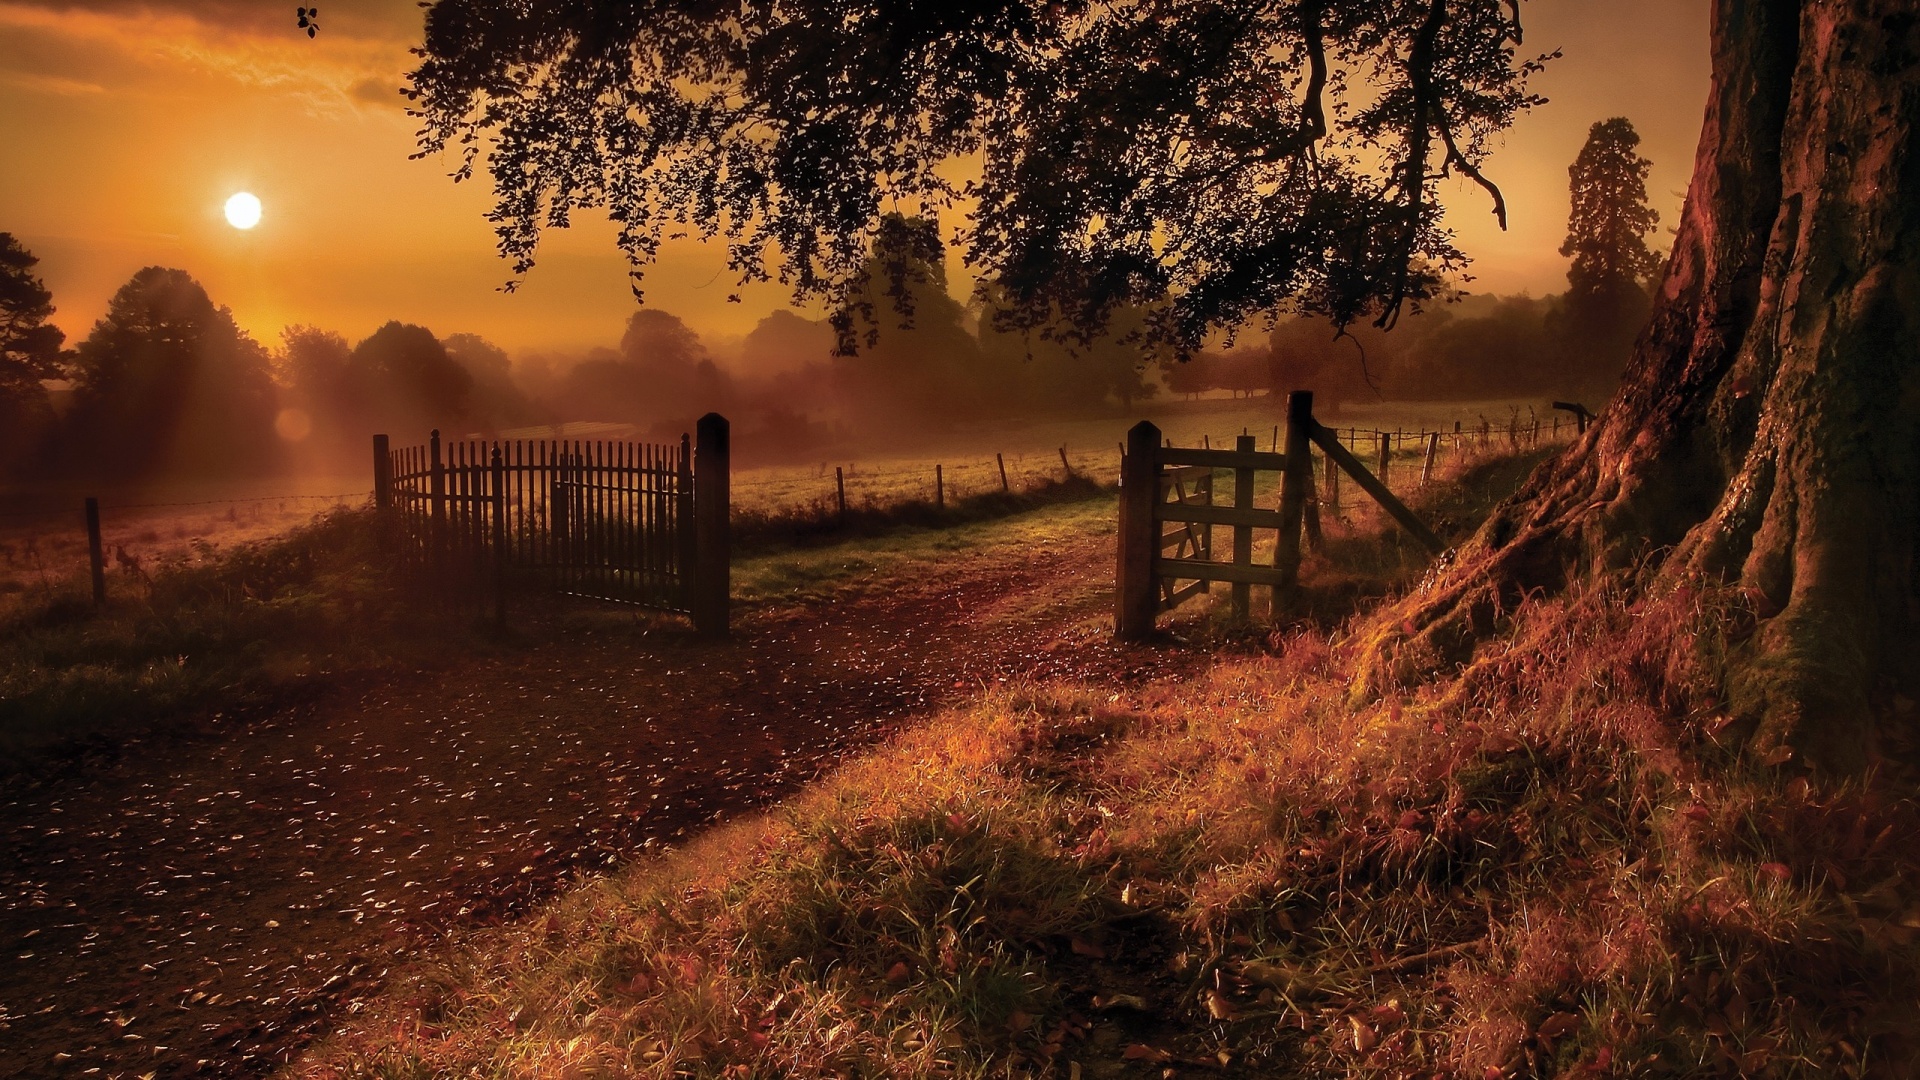 Autumn Landscape Image Download